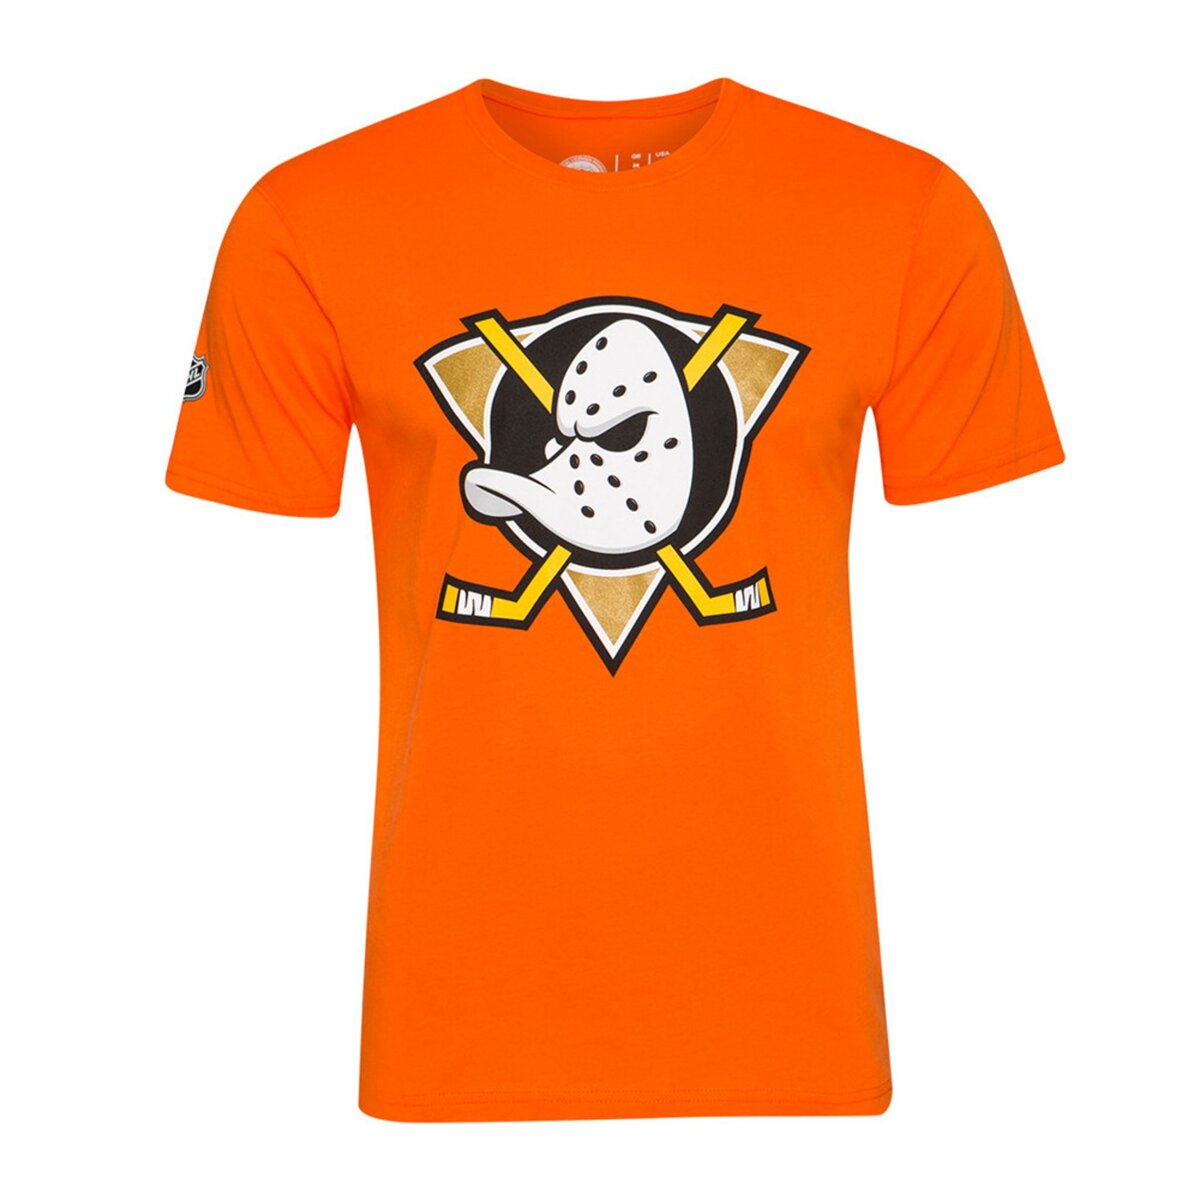  T-shirt Orange Homme NHL Anaheim Ducks